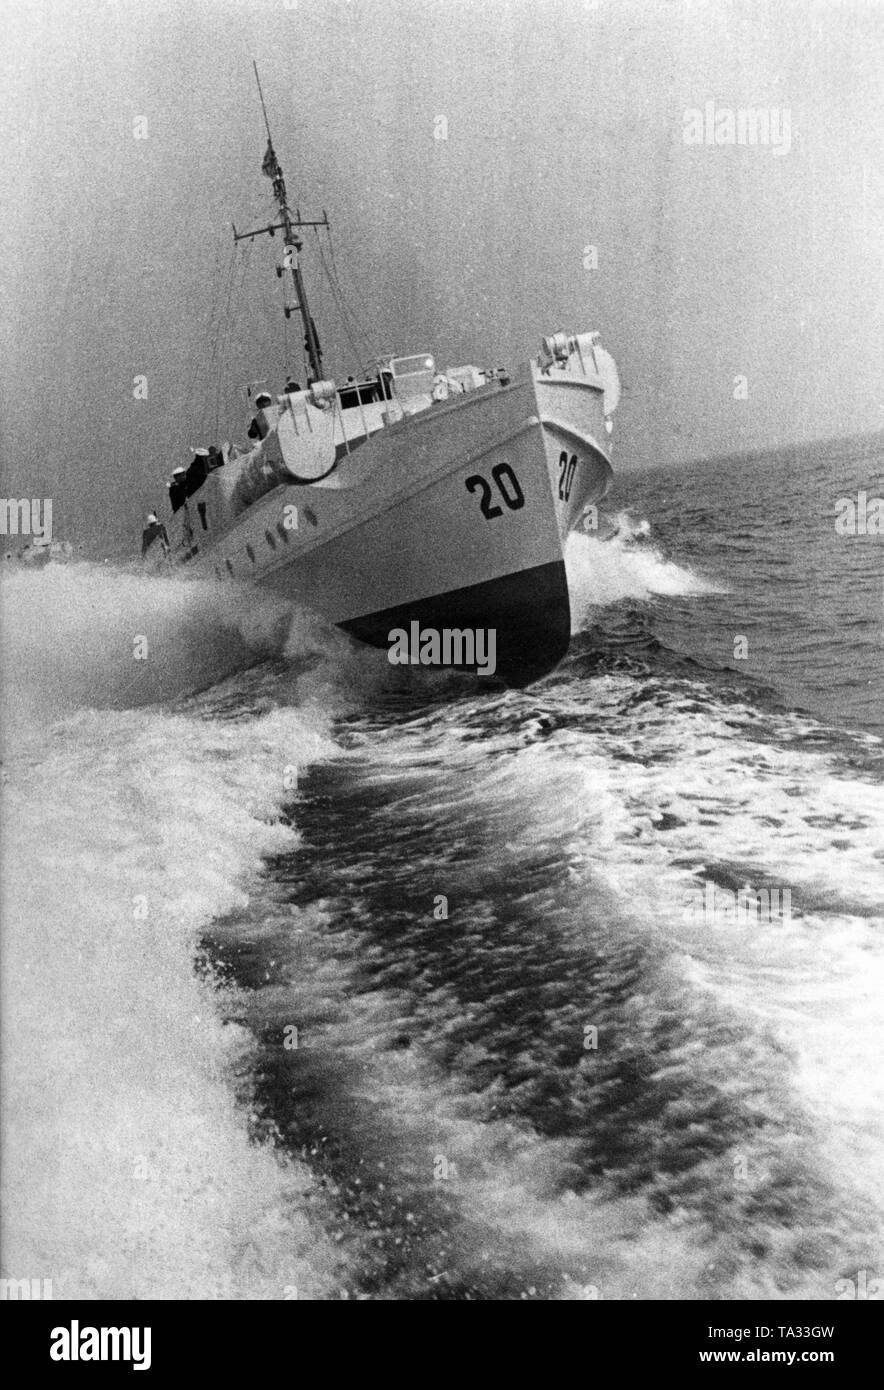 La foto mostra il motoscafo 'S 20' durante un viaggio. Motoscafi erano piccole navi da guerra che erano armati in questo momento con siluri e raggiunto ad alta velocità. Foto Stock